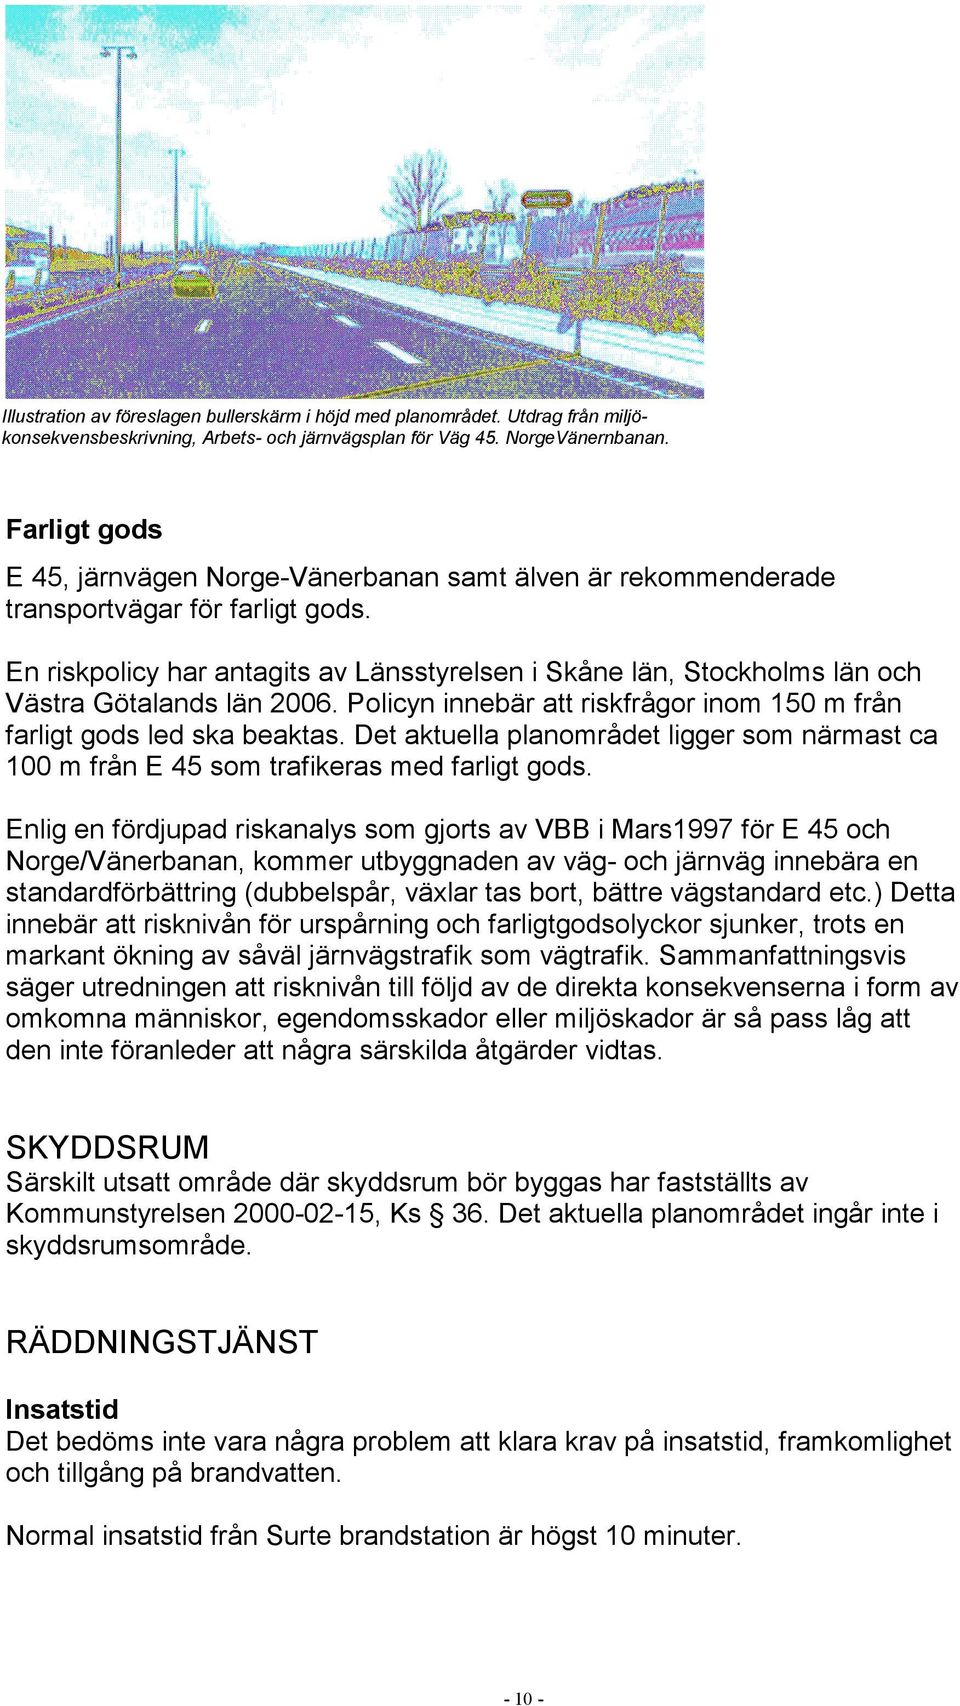 En riskpolicy har antagits av Länsstyrelsen i Skåne län, Stockholms län och Västra Götalands län 2006. Policyn innebär att riskfrågor inom 150 m från farligt gods led ska beaktas.